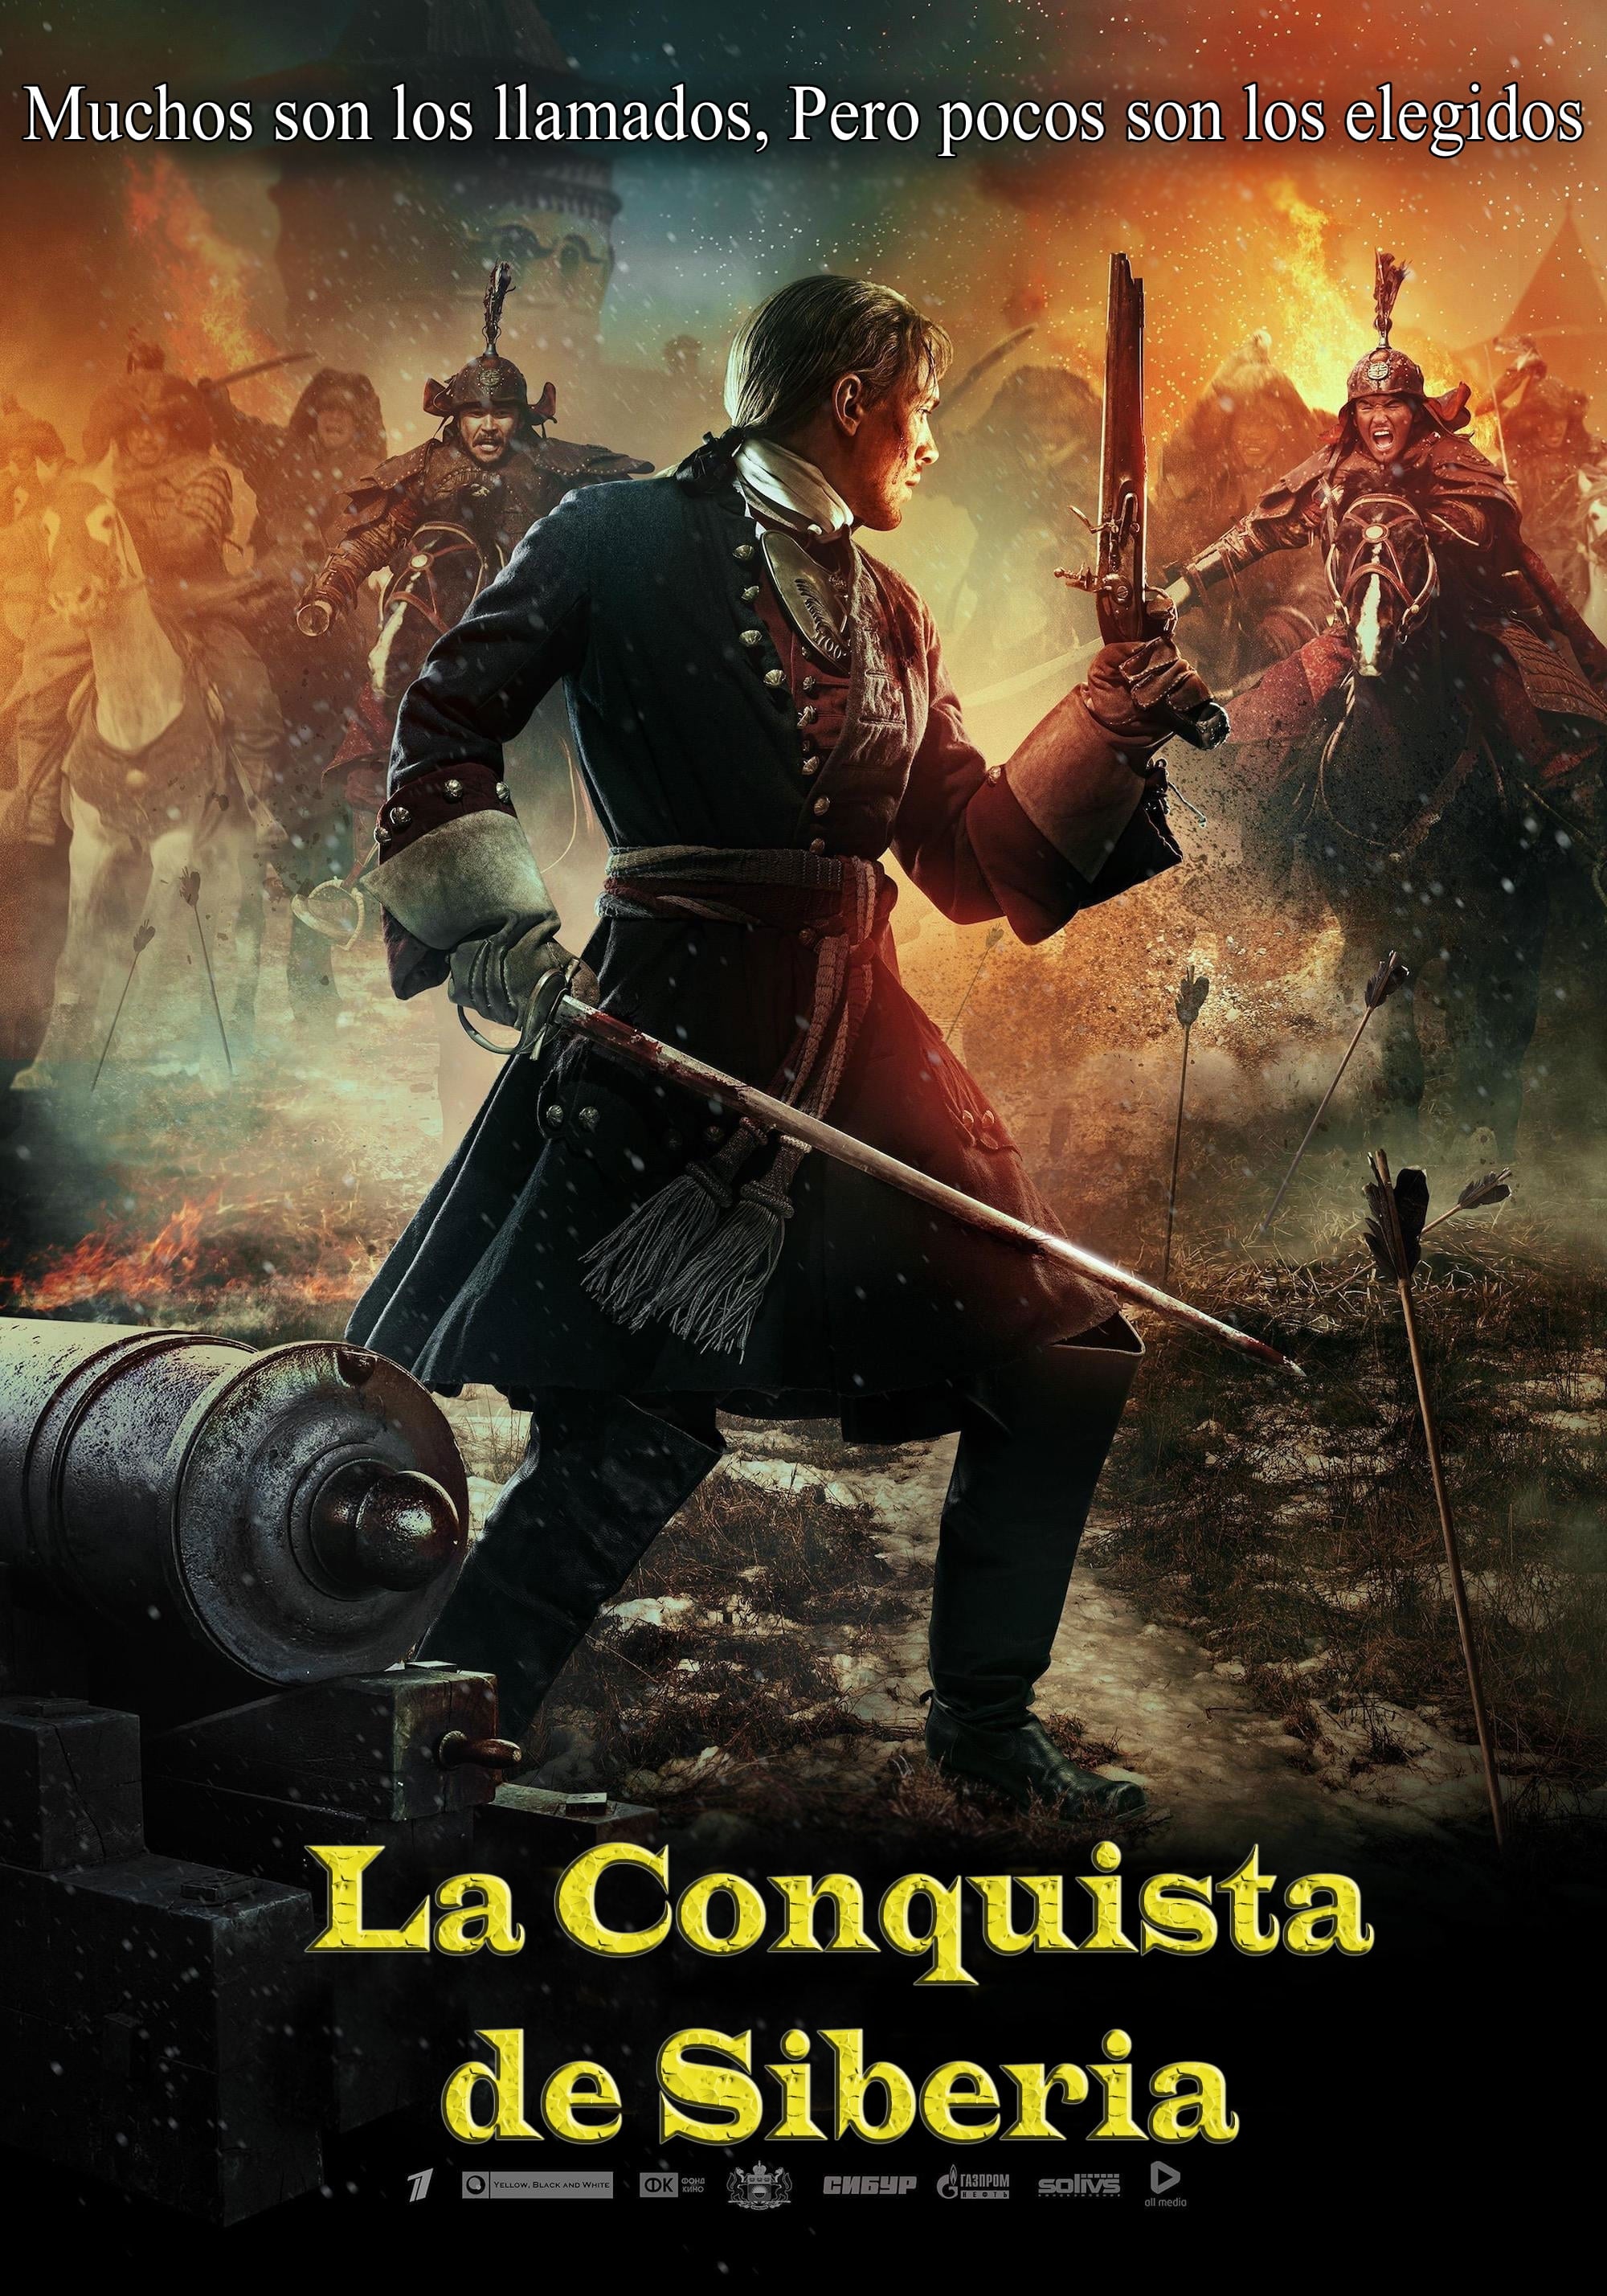 La Conquista de Siberia (2019) PLACEBO Full HD 1080p Latino